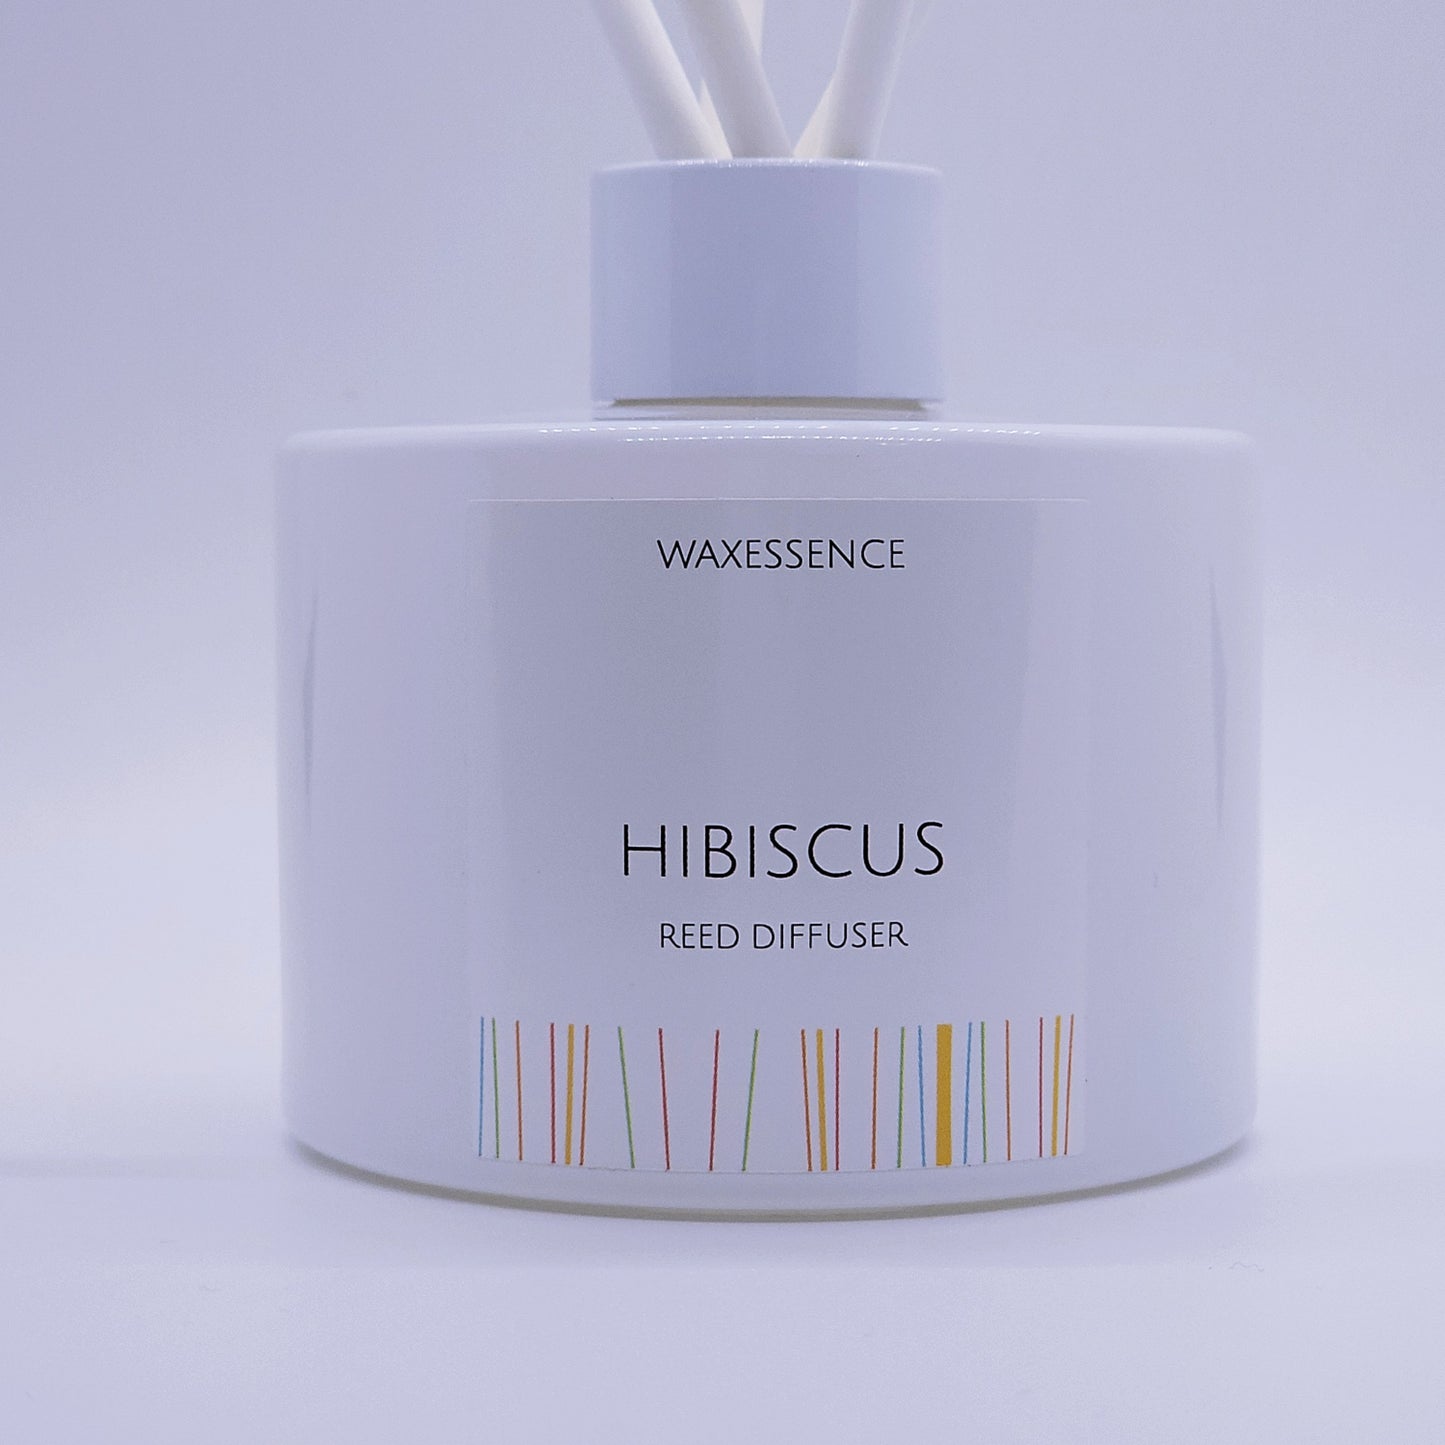 Hibiscus Reed Diffuser | Essenza Gloss White  | Aromatherapy Home Decor | Diffuser Oil | 6.8 fl. oz